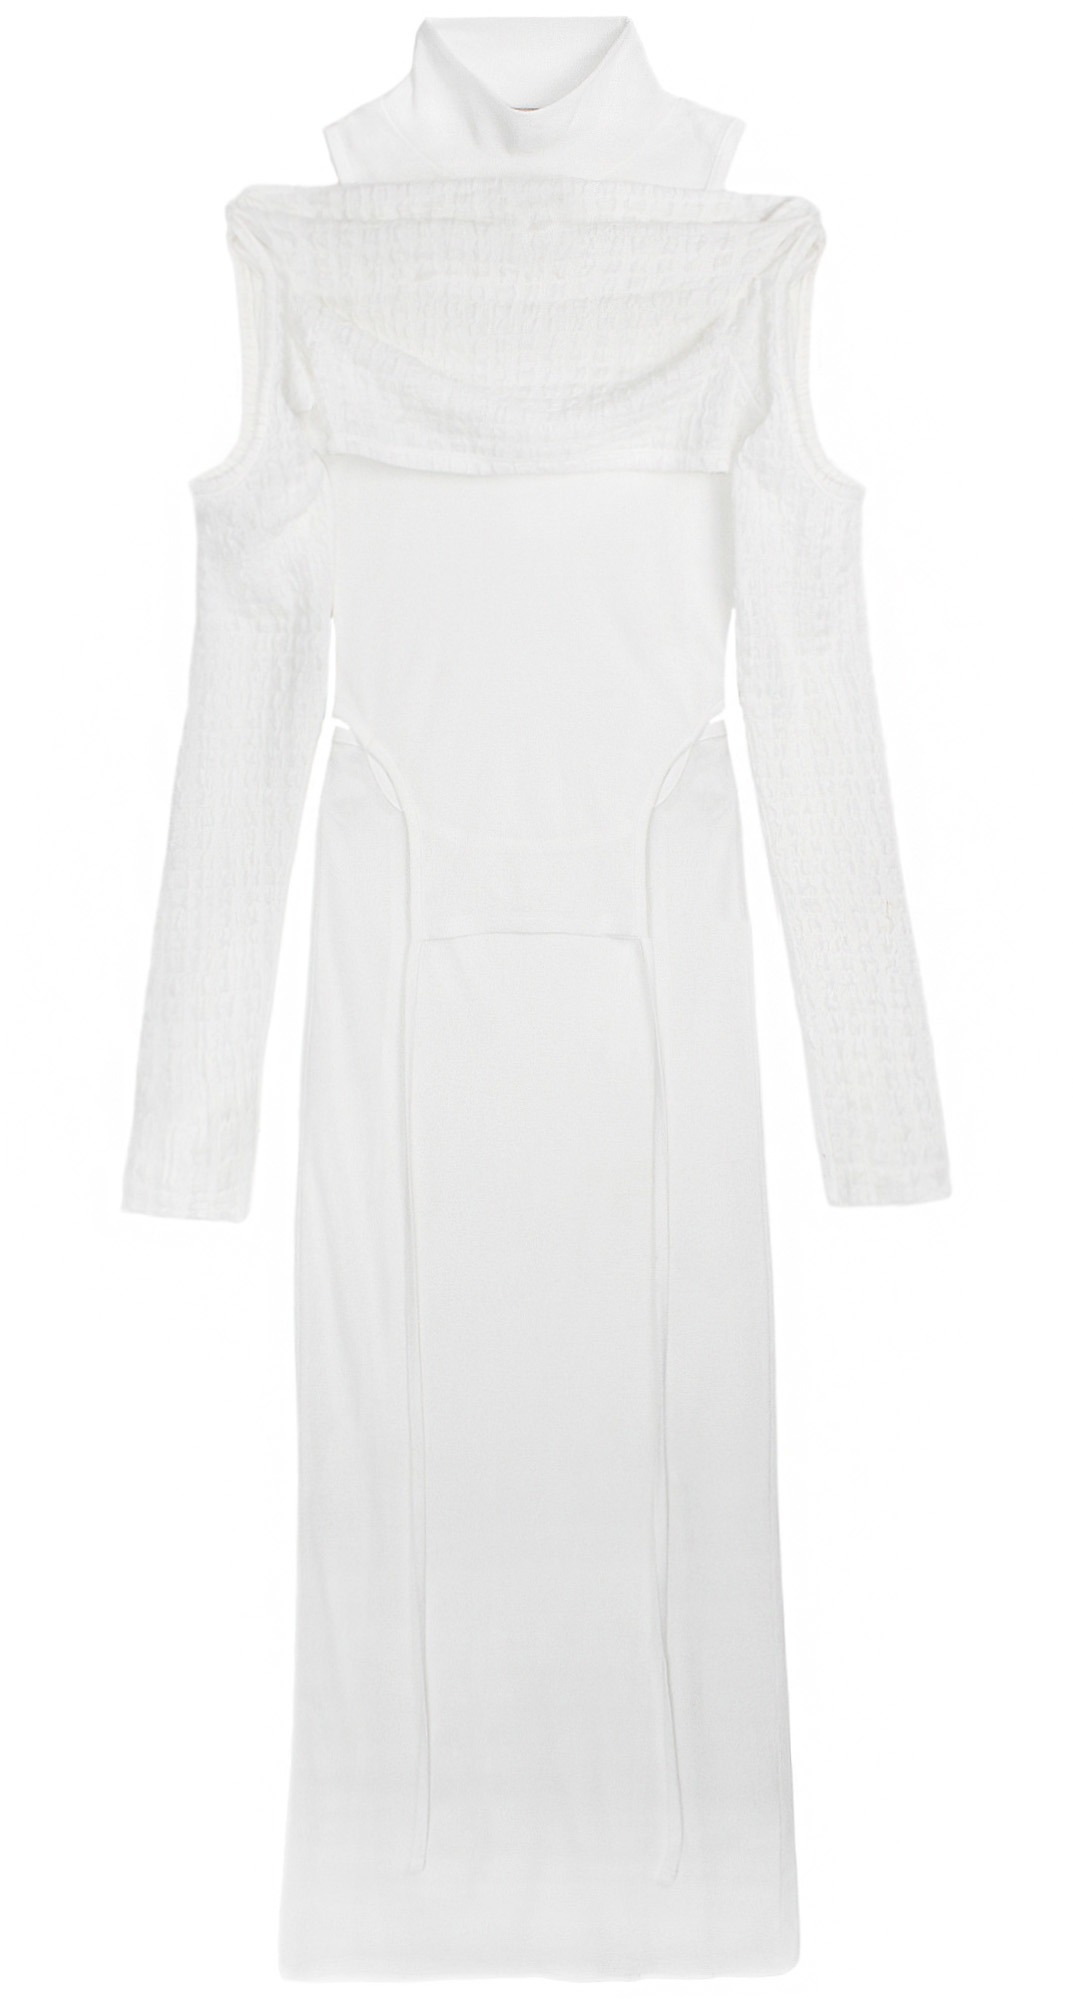 Bolero dress (White)